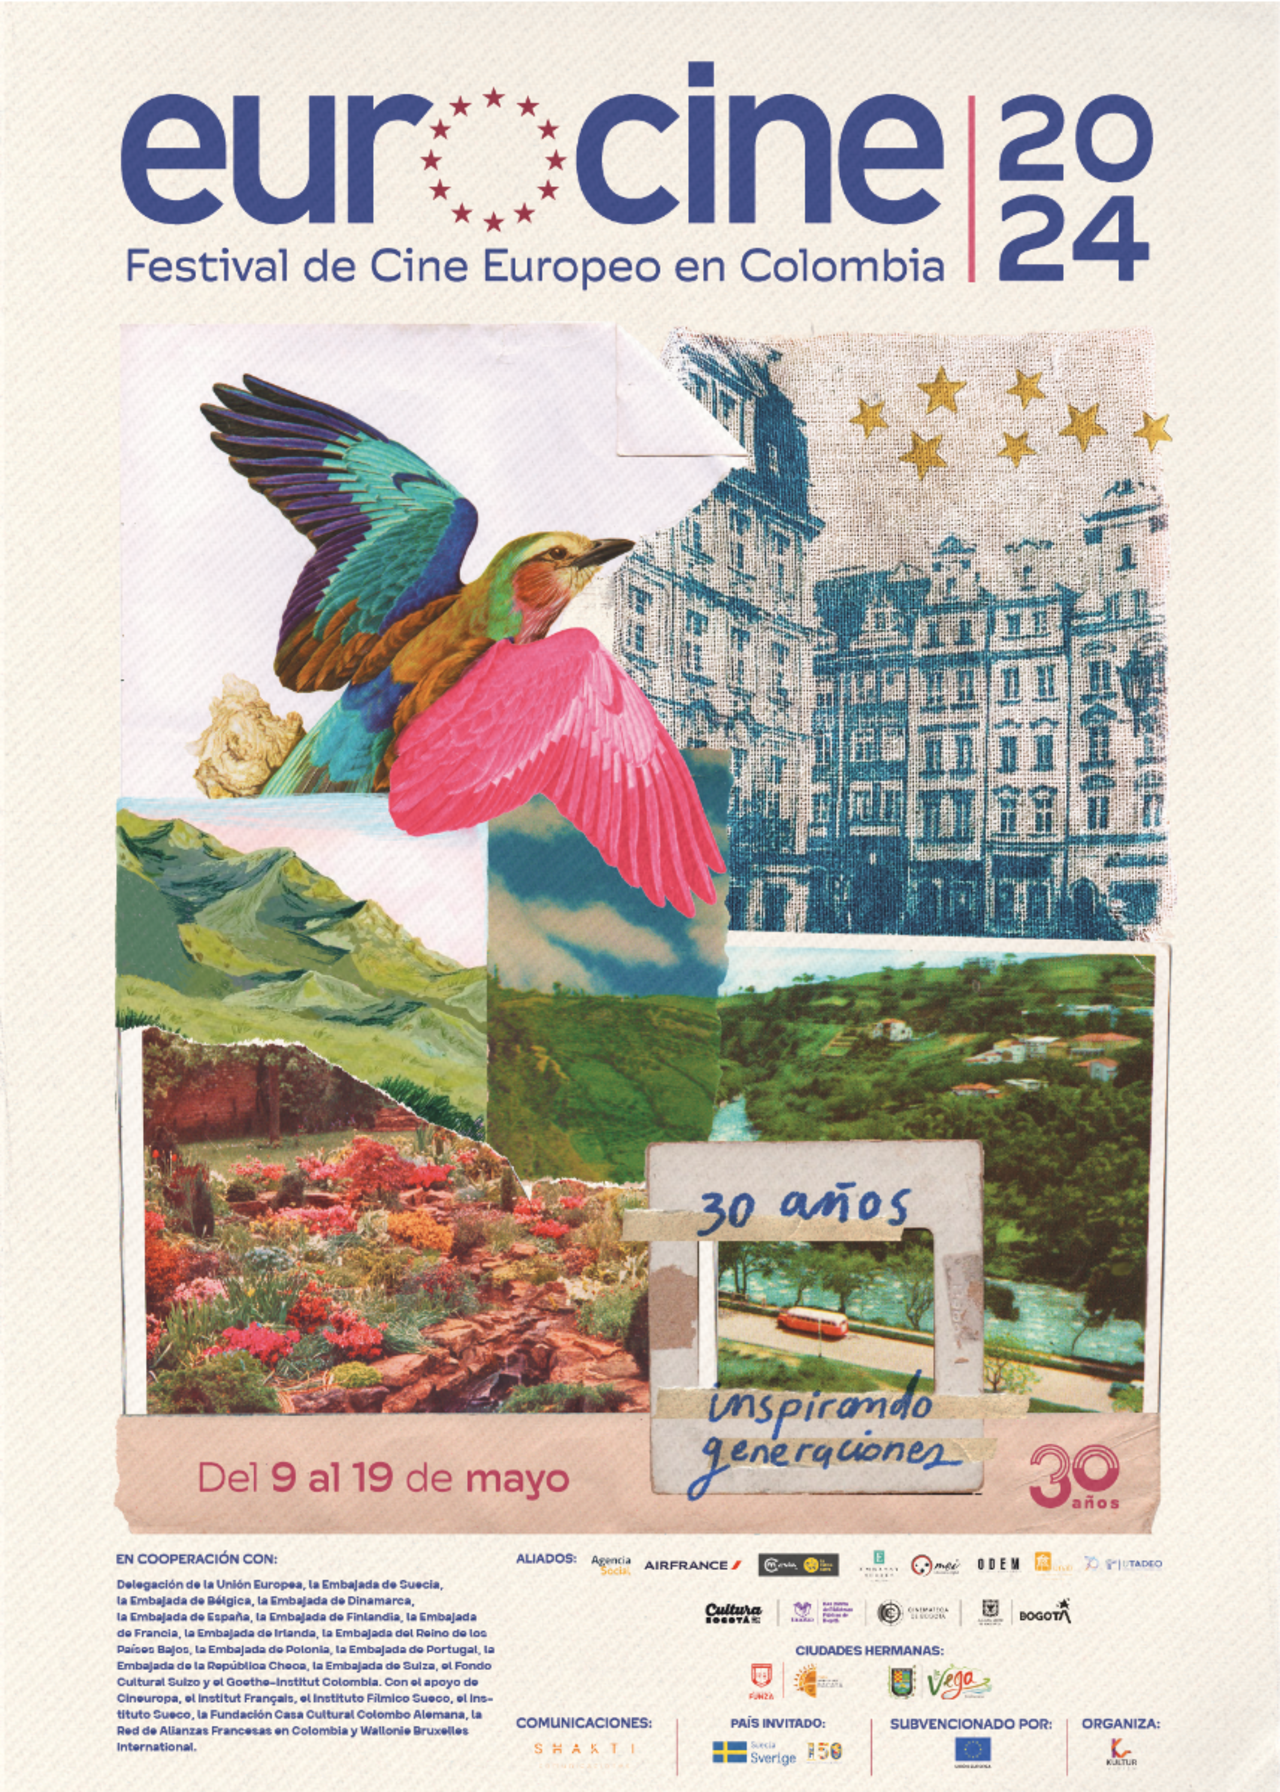 El afiche oficial de la edición 30 de Eurocine tuvo el apoyo de Laura Agudelo, María Fernanda Romero y Sofía Ceballos.